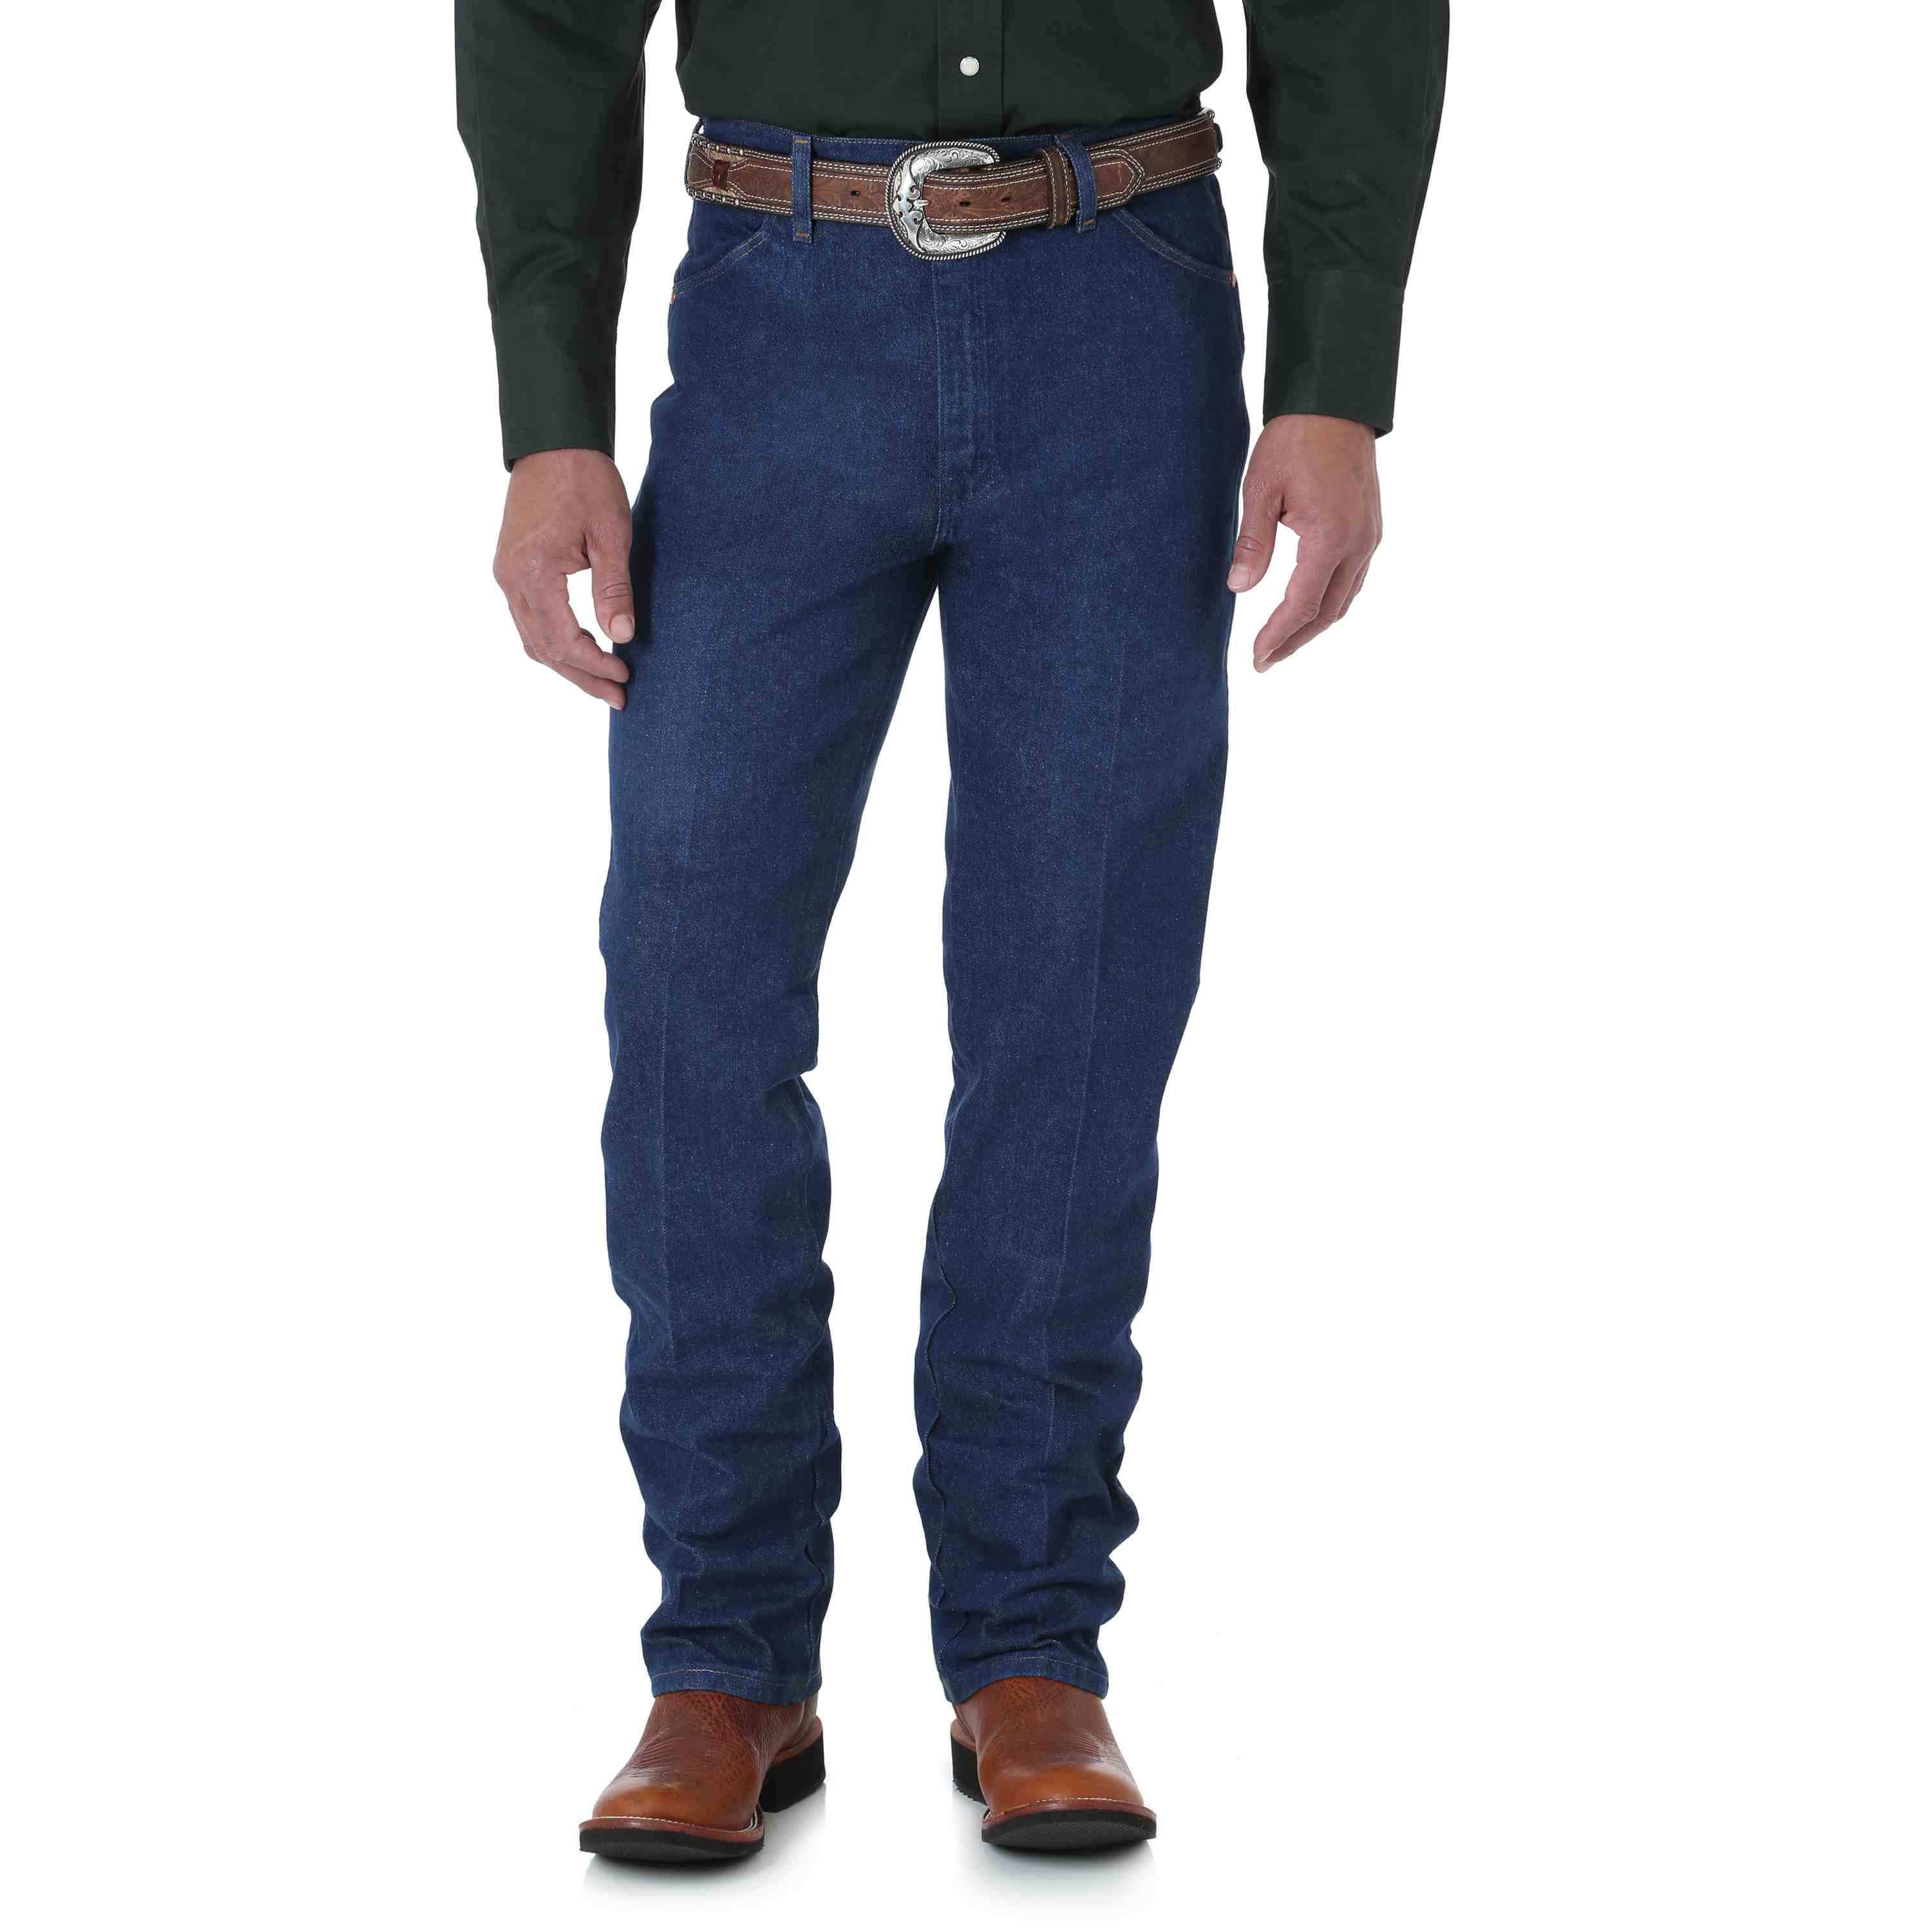 Wrangler Men's Cowboy Cut Slim Fit Jeans 936PWD - Russell's Western Wear,  Inc.